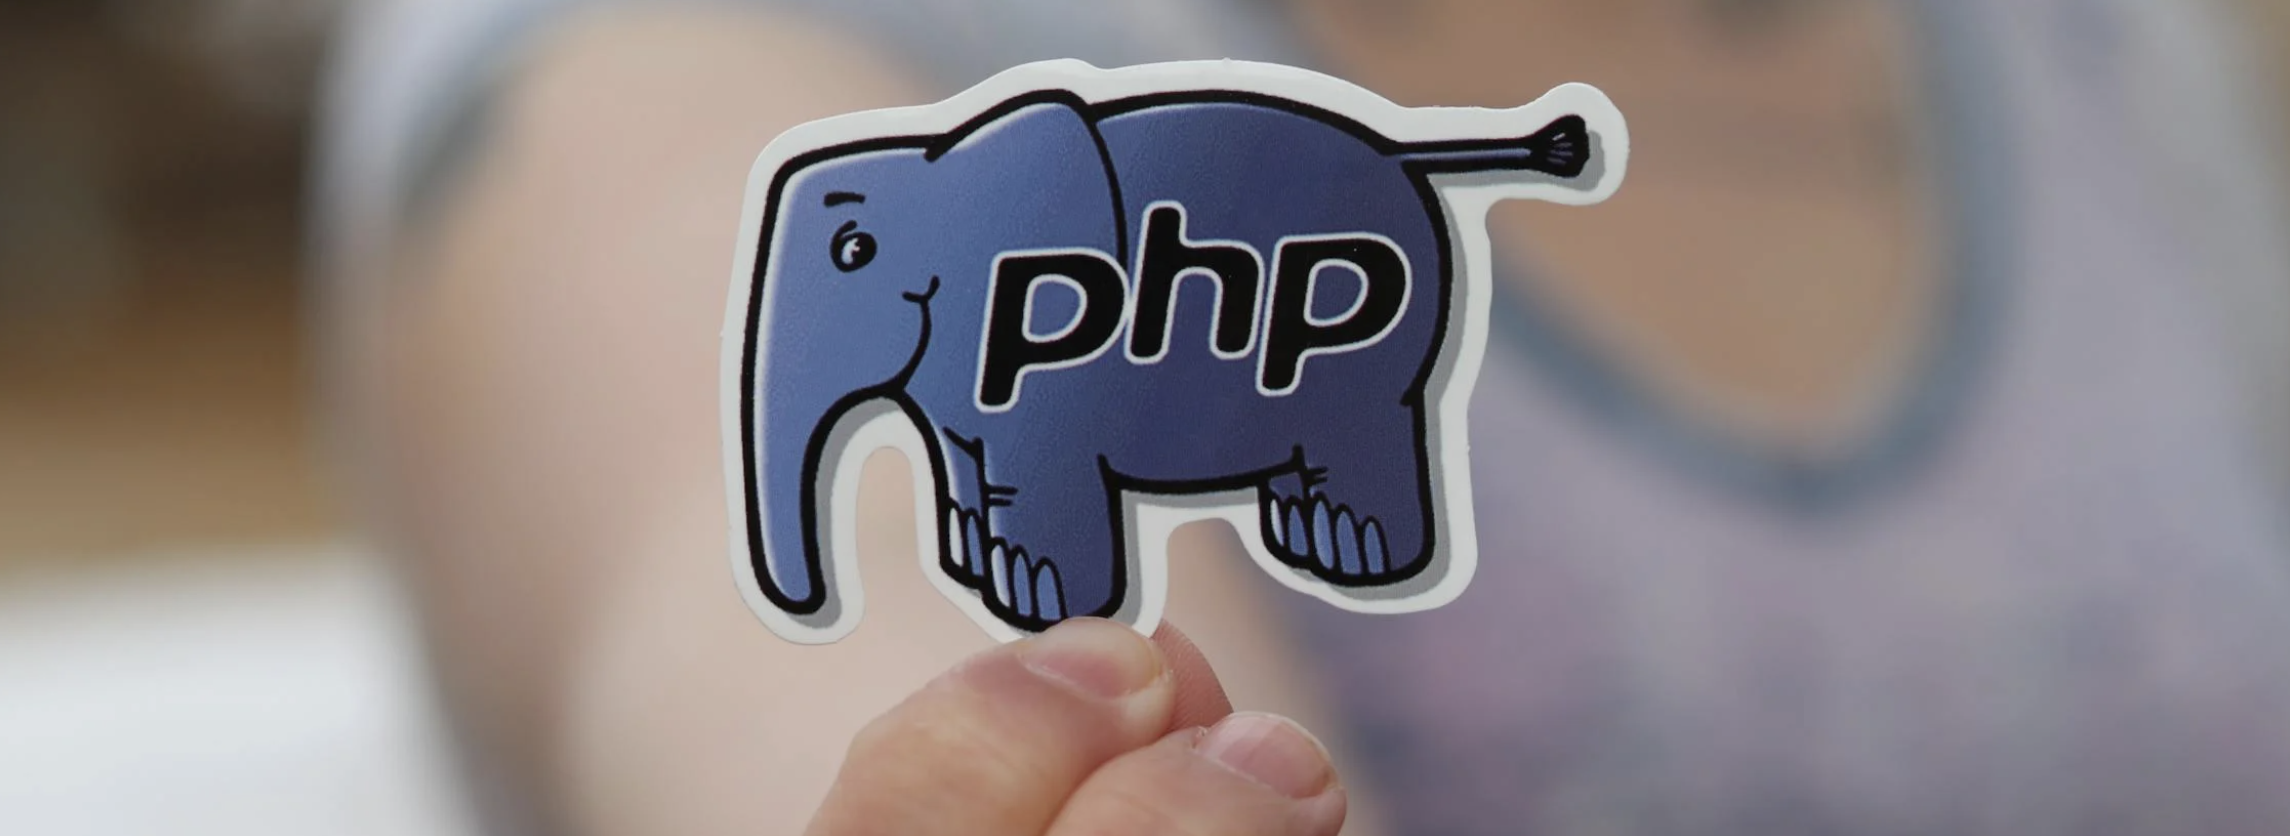 Wat is PHP?